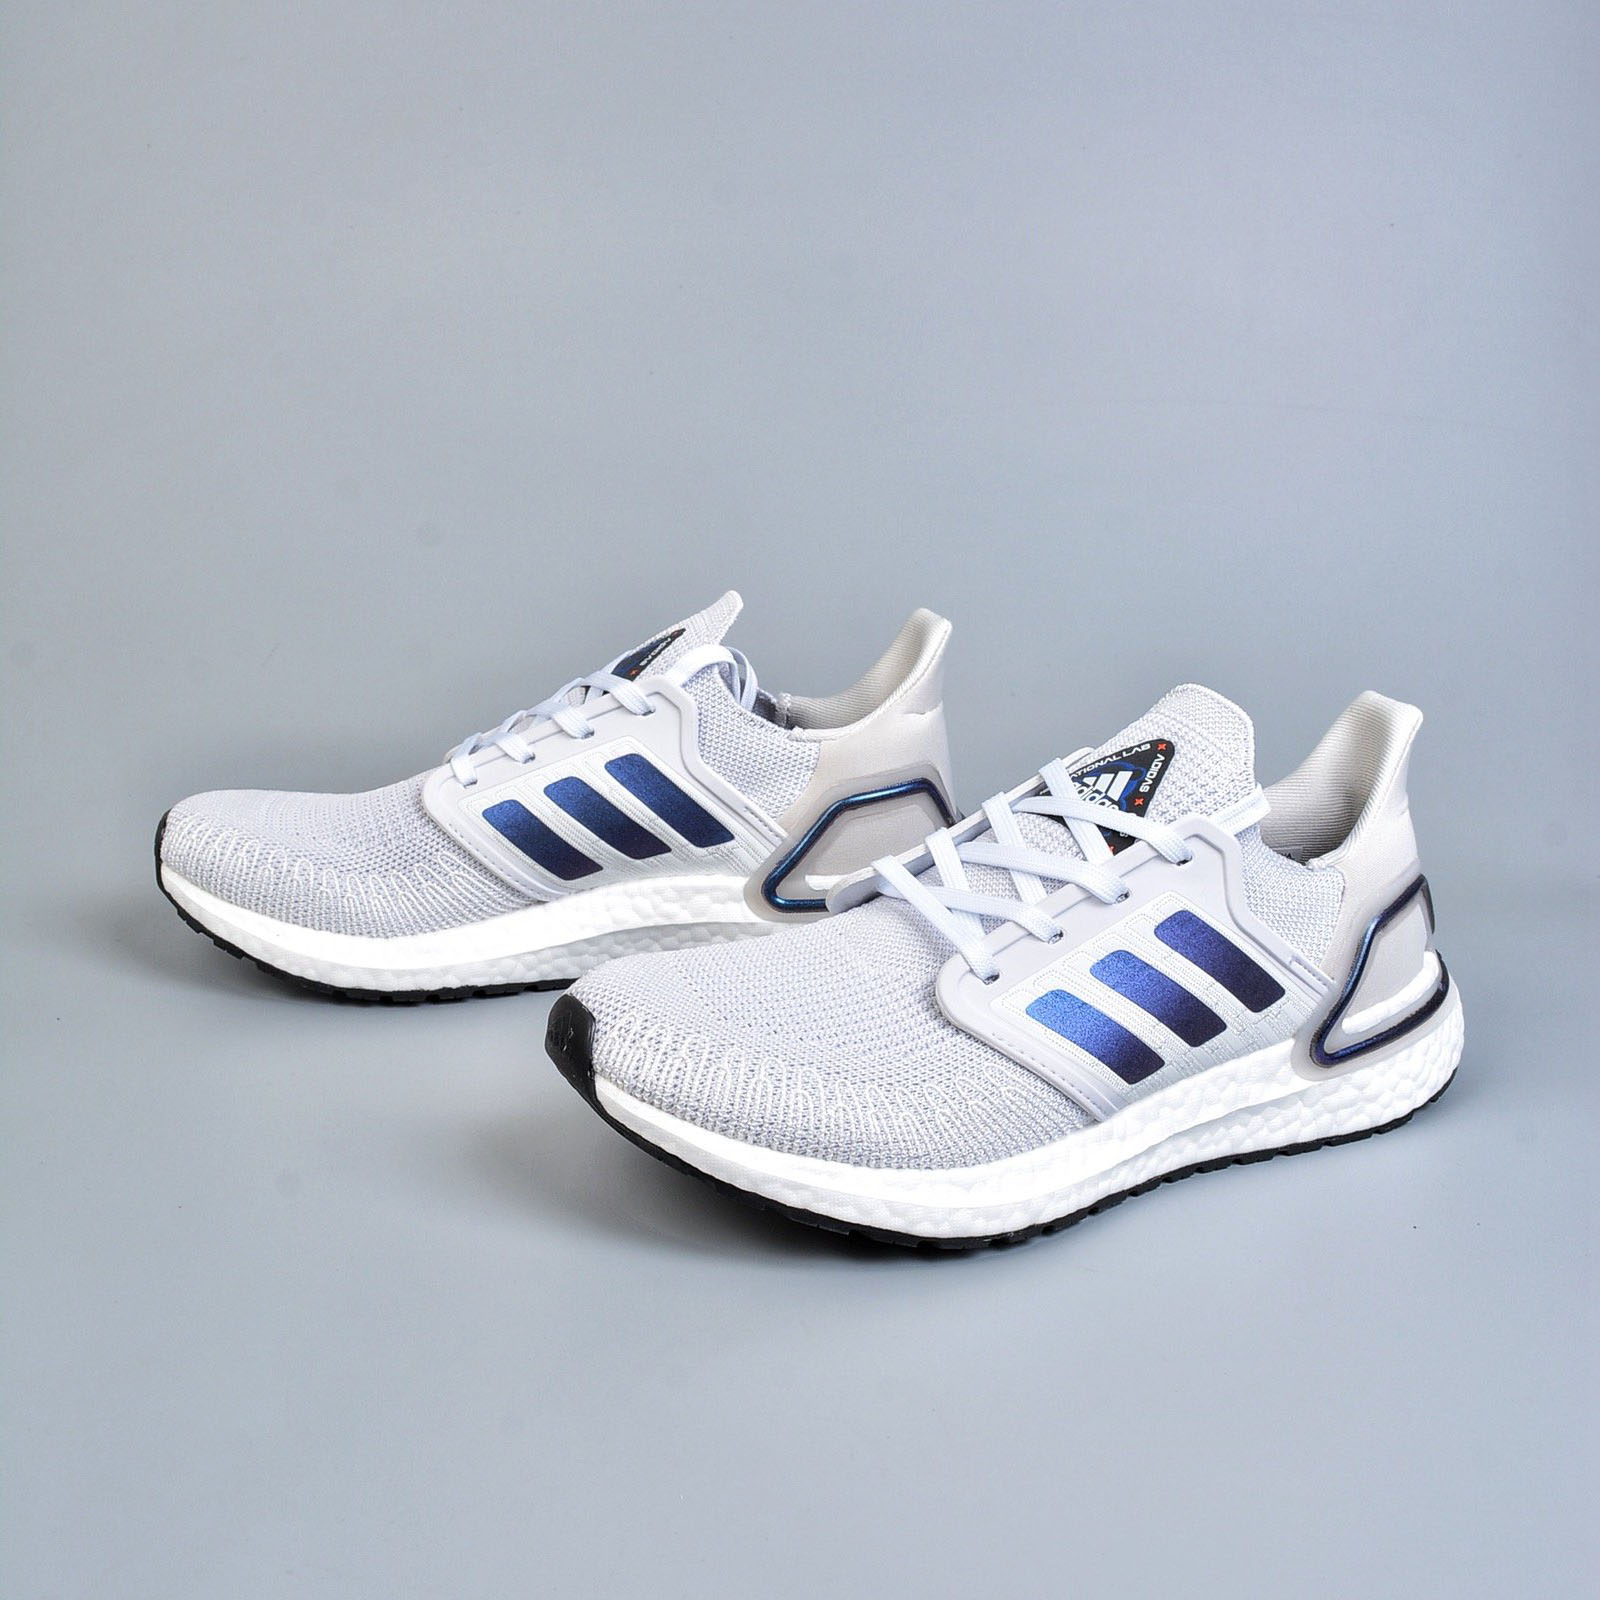 adidas ultraboost men's running shoes